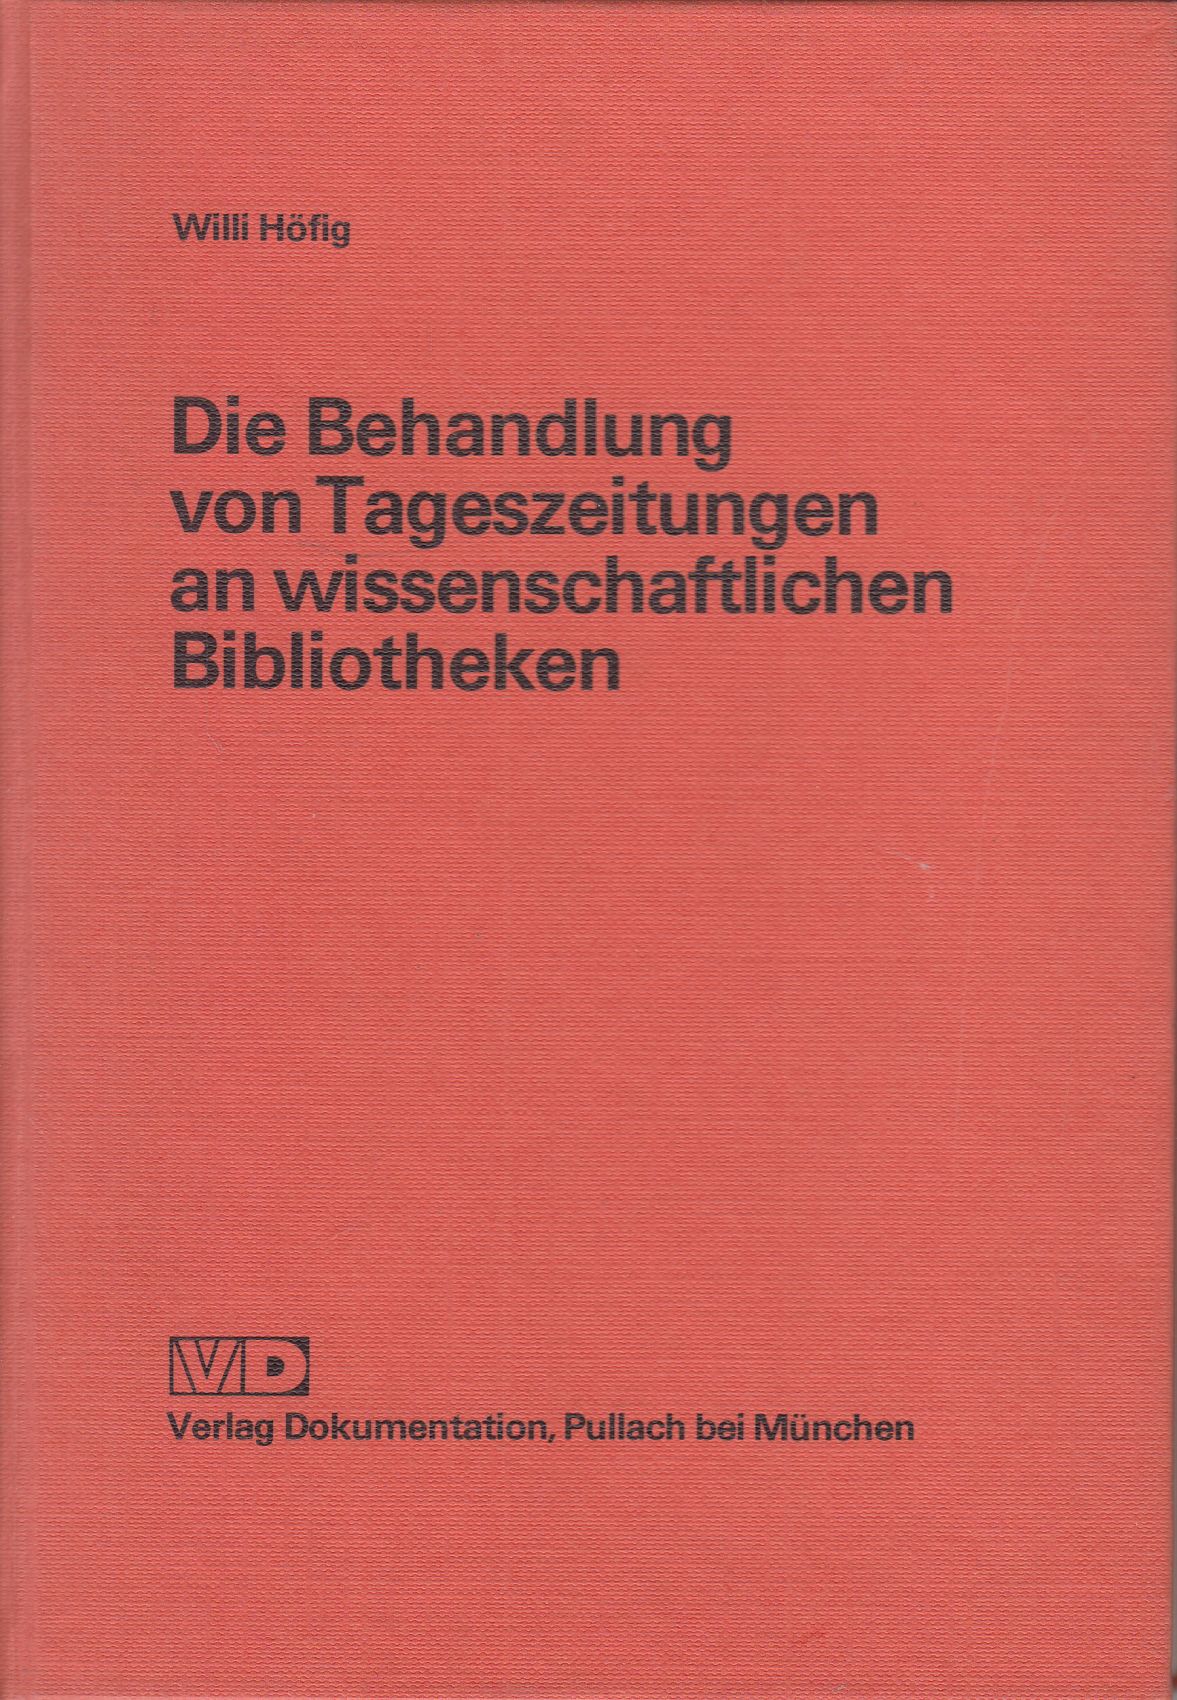 Die Behandlung von Tageszeitungen an wissenschaftlichen Bibliotheken: Eine bibliothekarische Leitstudie. - - Höfig, Willi